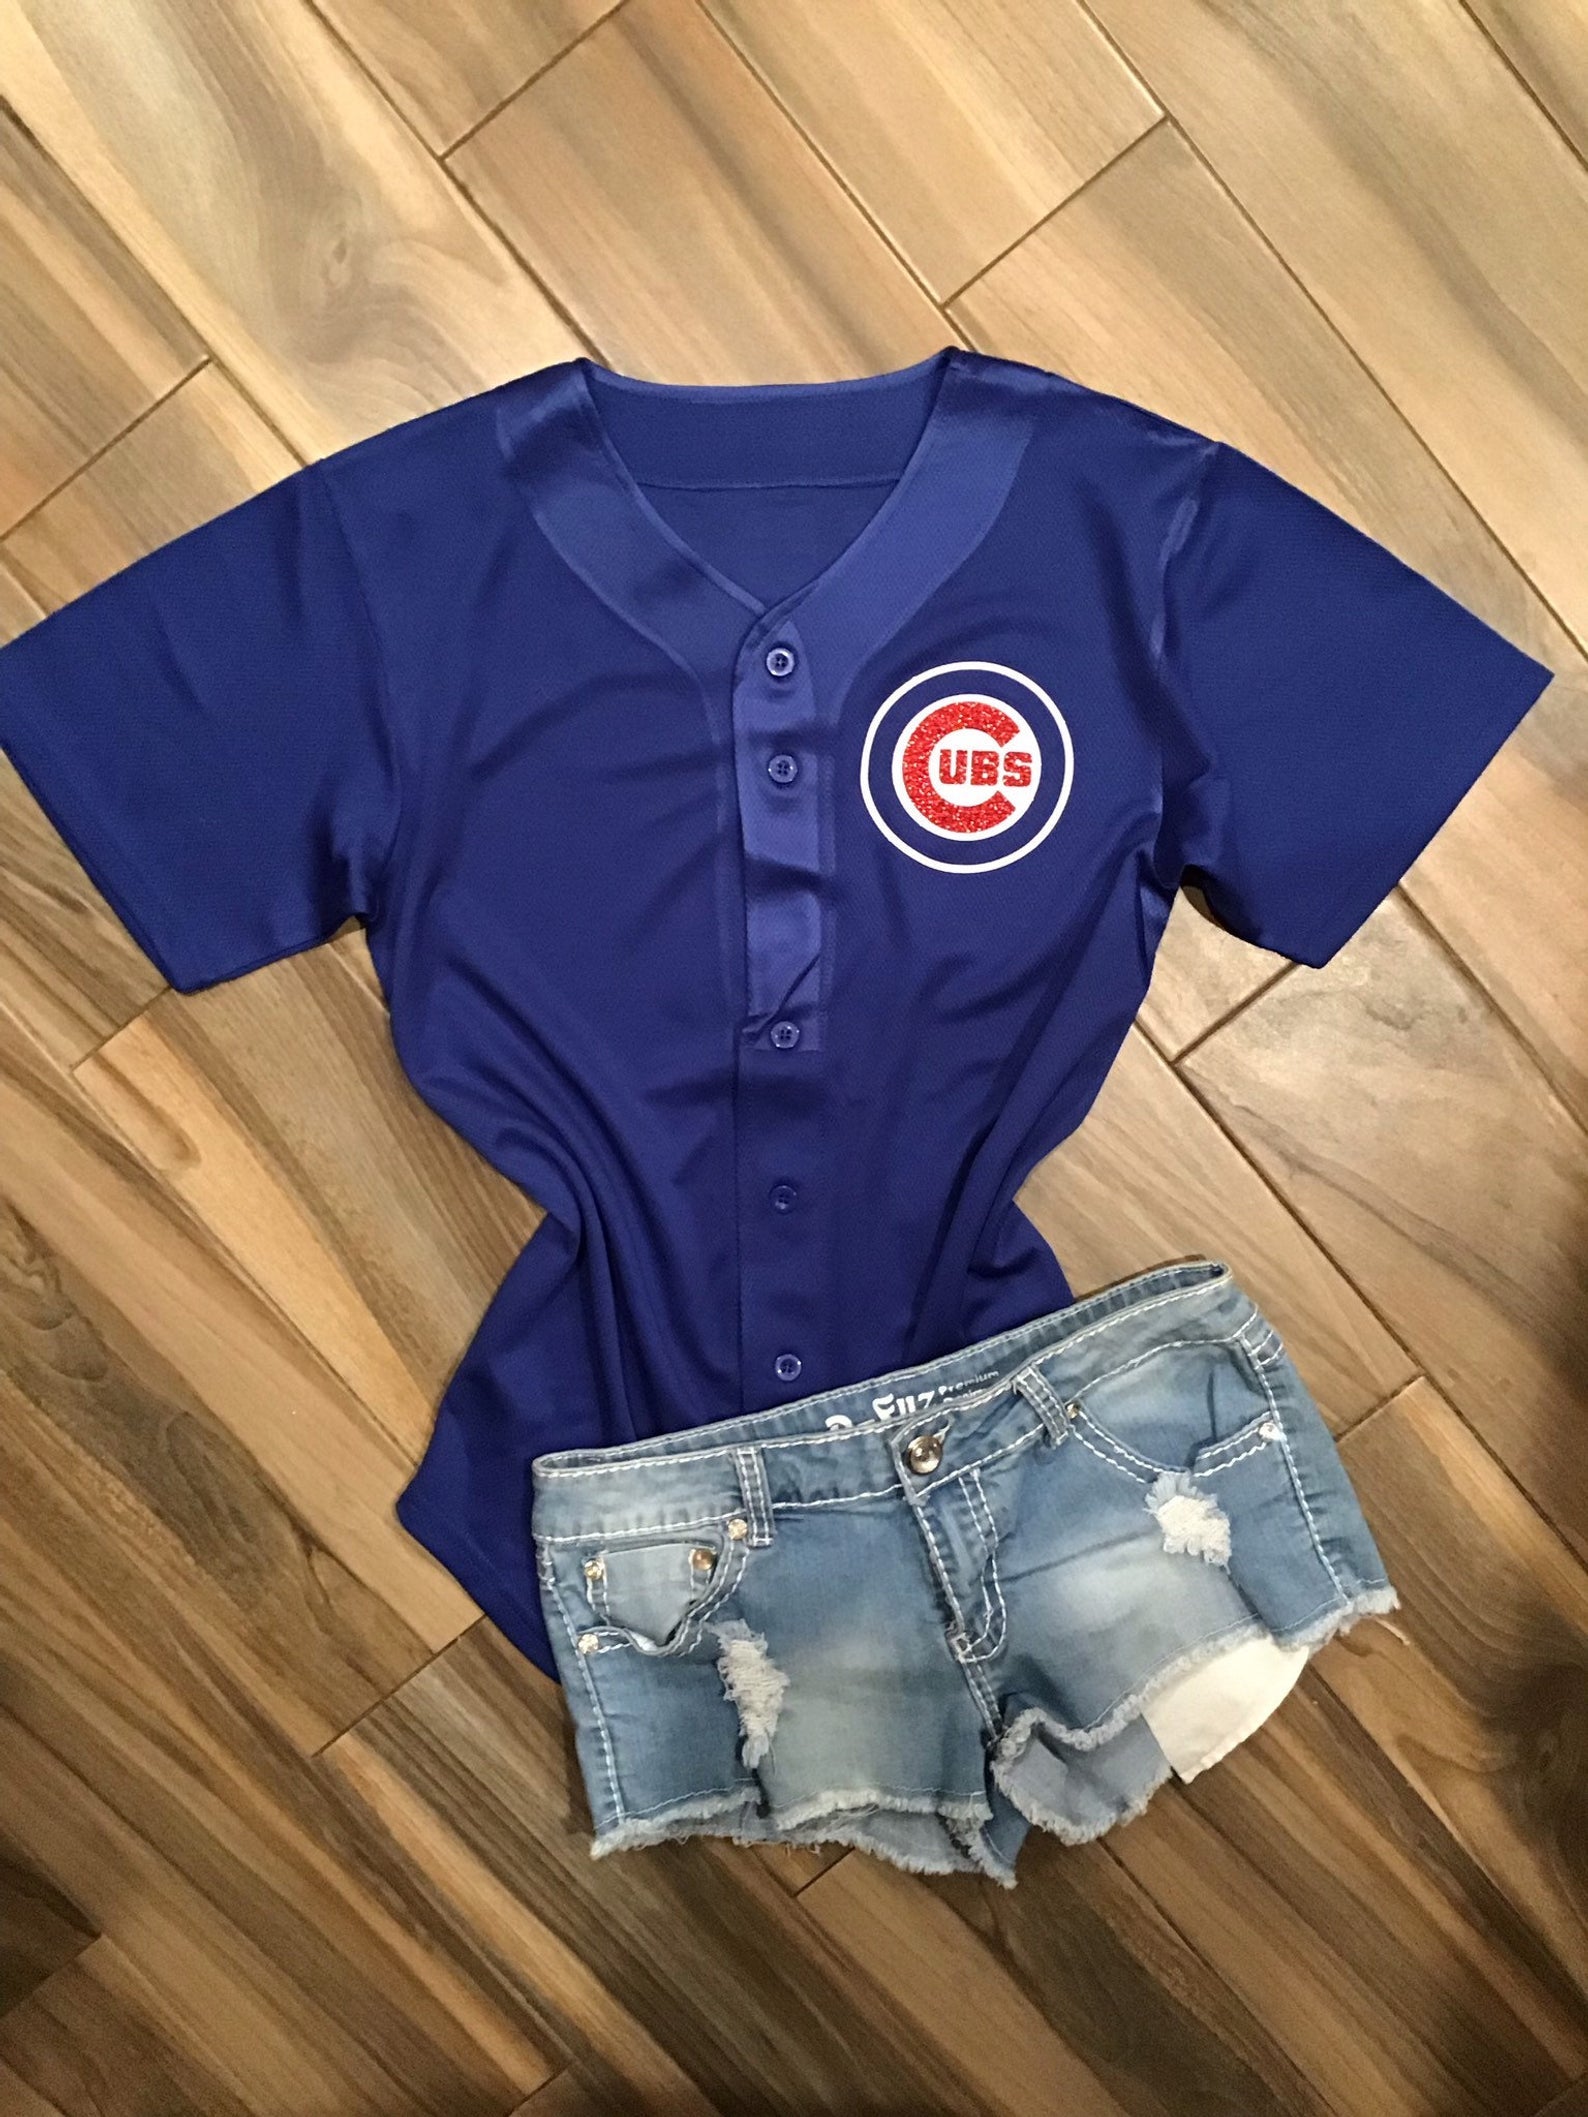 Lulu Grace Designs Chicago Cubs Inspired Baseball Jersey: Baseball Fan Gear & Apparel for Women L / Ladies Muscle Tank